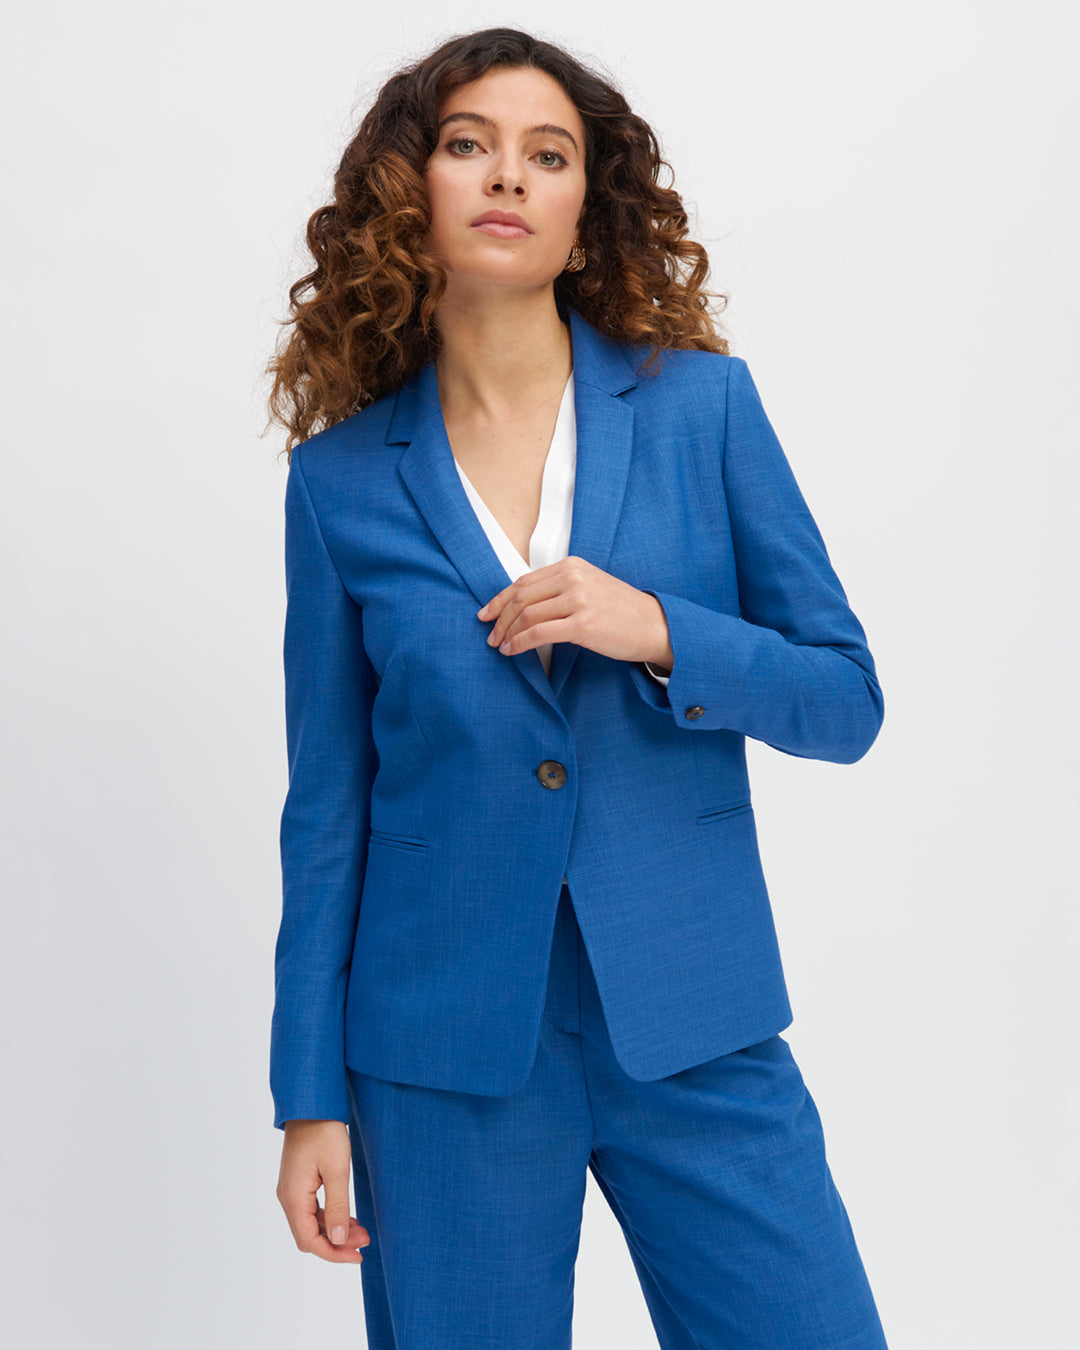 Paris suit jacket - Azure blue